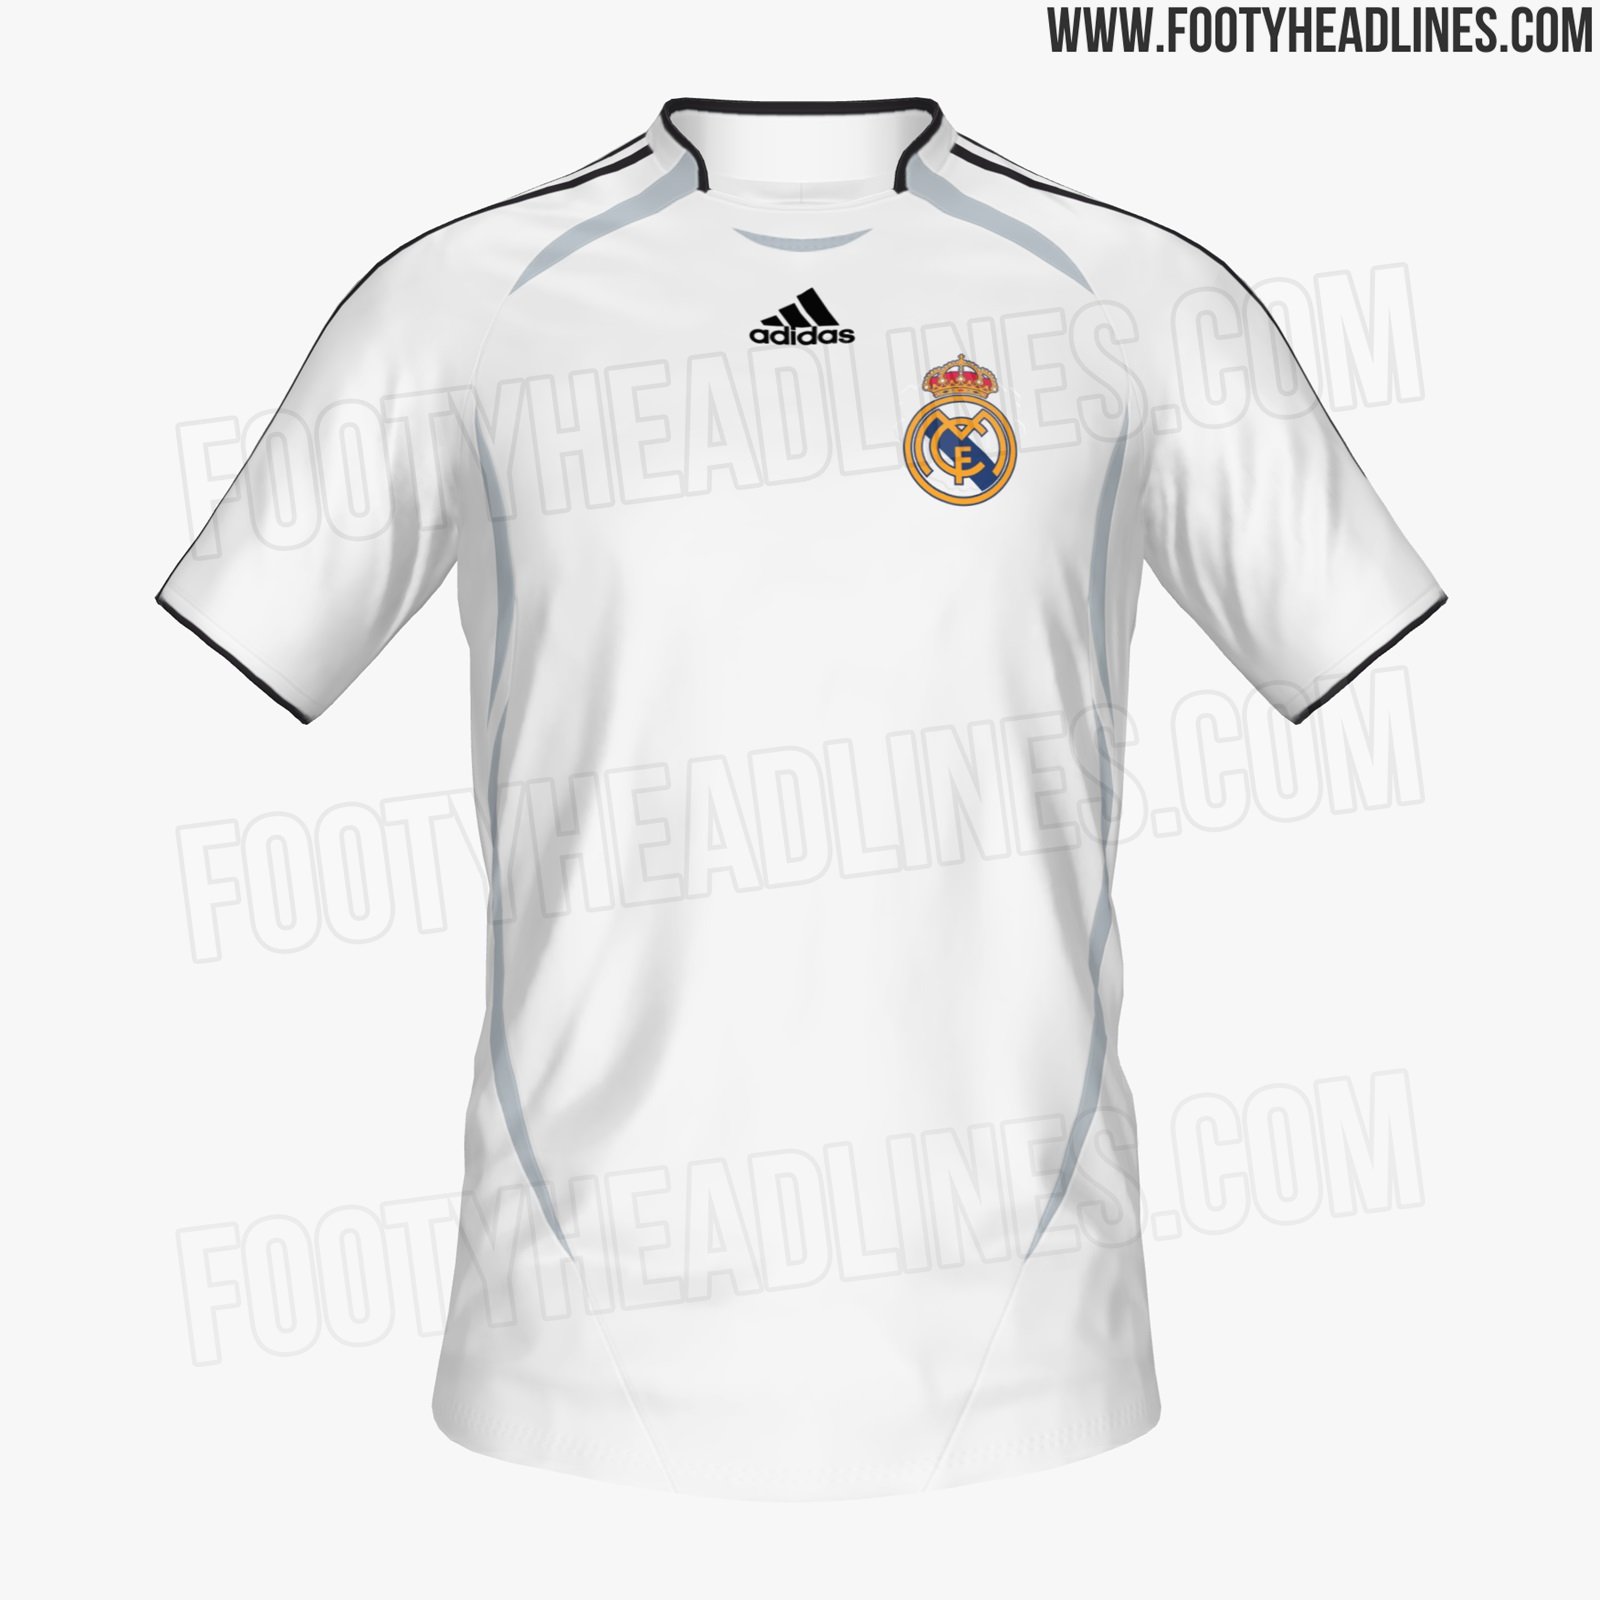 Sala Instituto docena Twitter 上的 RealEspartaβ："Real Madrid Teamgeist 2022. Camiseta retro de  Adidas que saldrá a la venta en noviembre-diciembre, inspirada en el diseño  de la temporada 2006-07. https://t.co/3fAigrCOIN" / Twitter